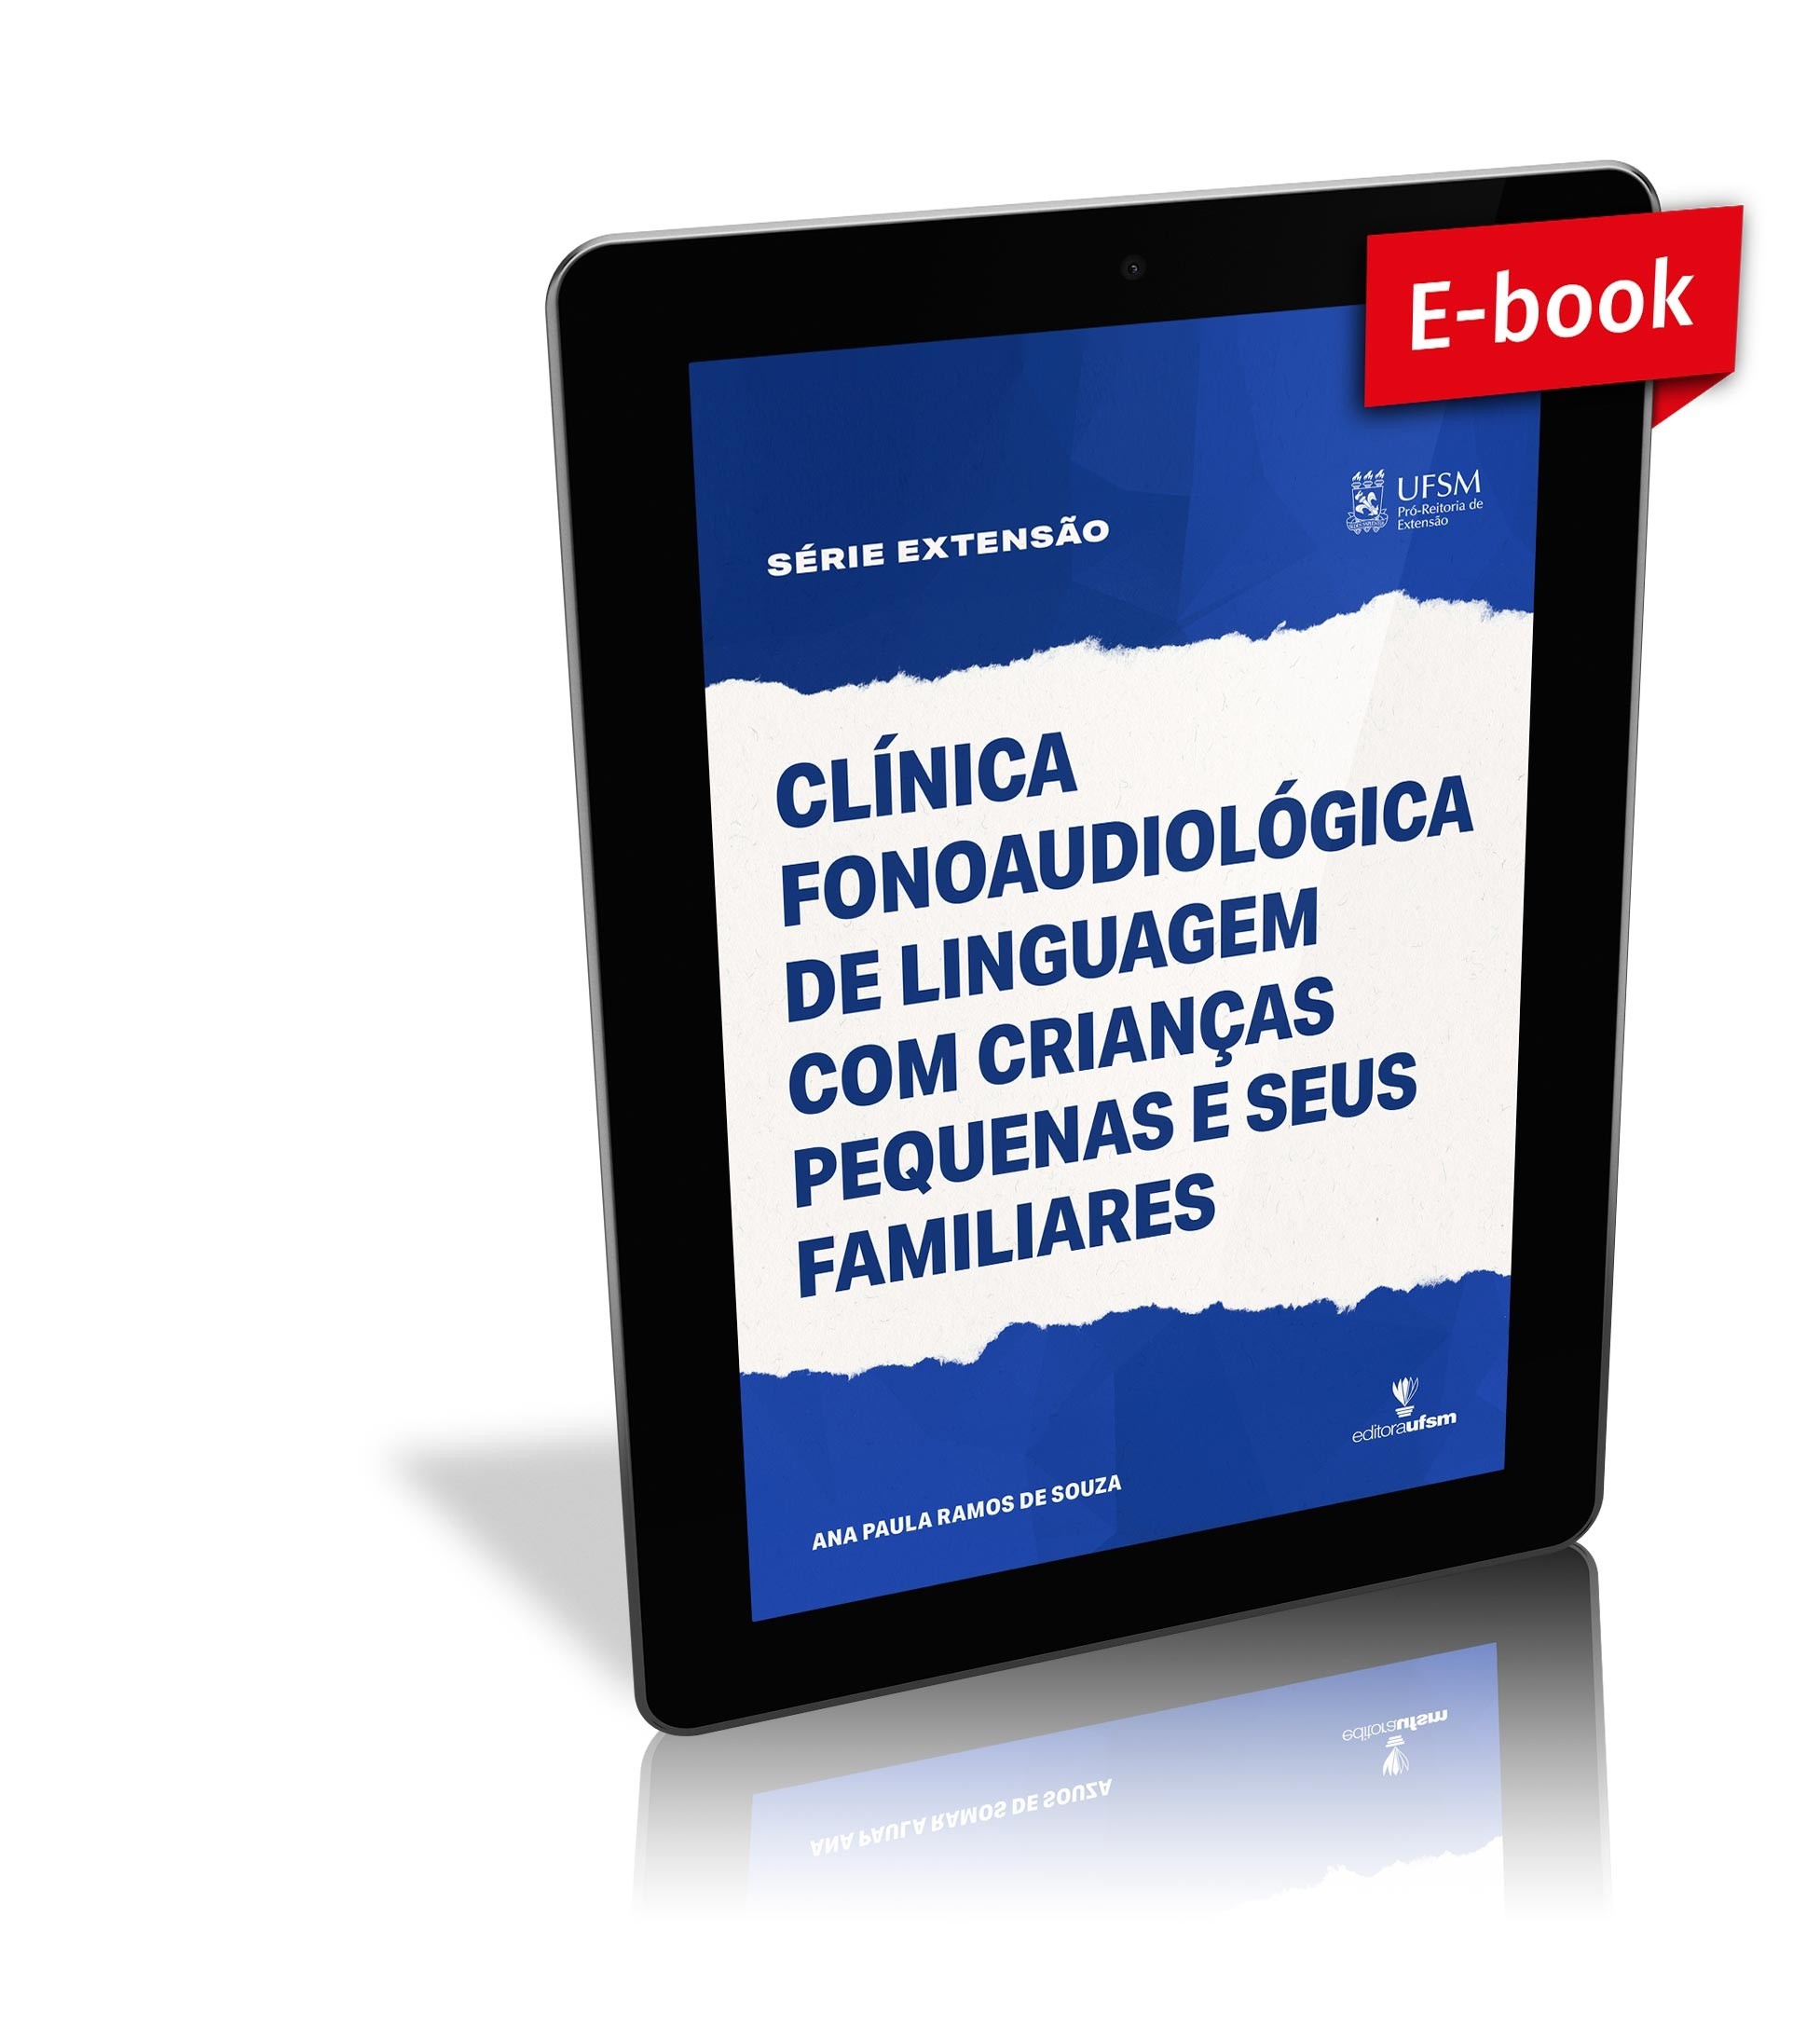 Capa do e-book Clínica fonoaudiológica de linguagem com crianças pequenas e seus familiares